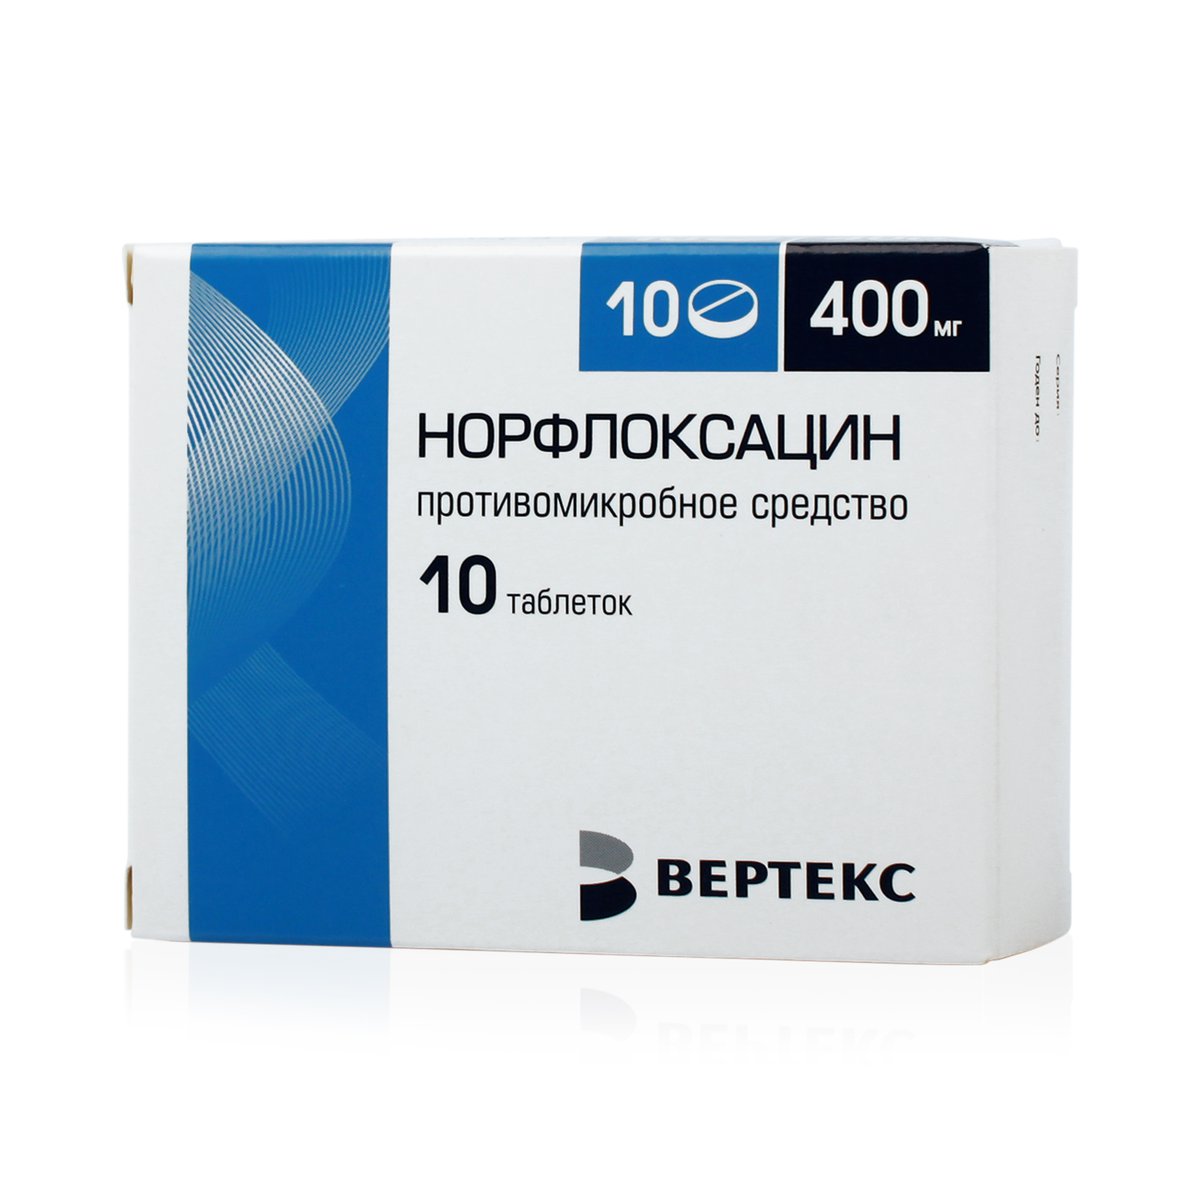 Норфлоксацин (таблетки, 10 шт, 400 мг) - цена,  онлайн  .